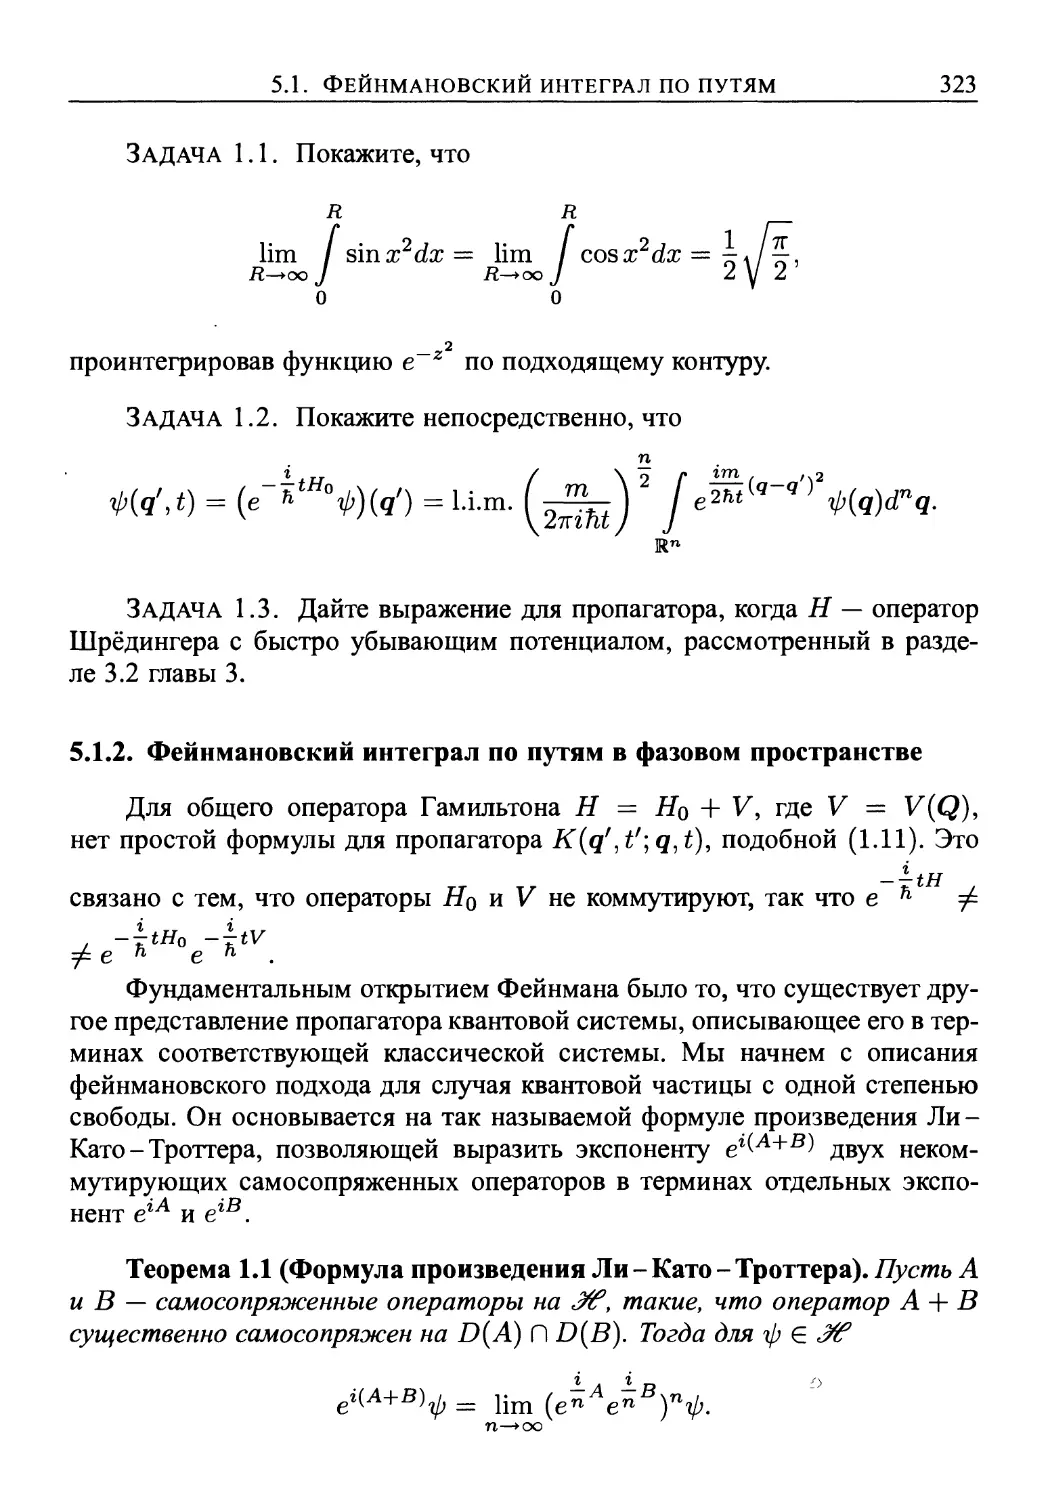 5.1.2. Фейнмановский интеграл по путям в фазовом пространстве